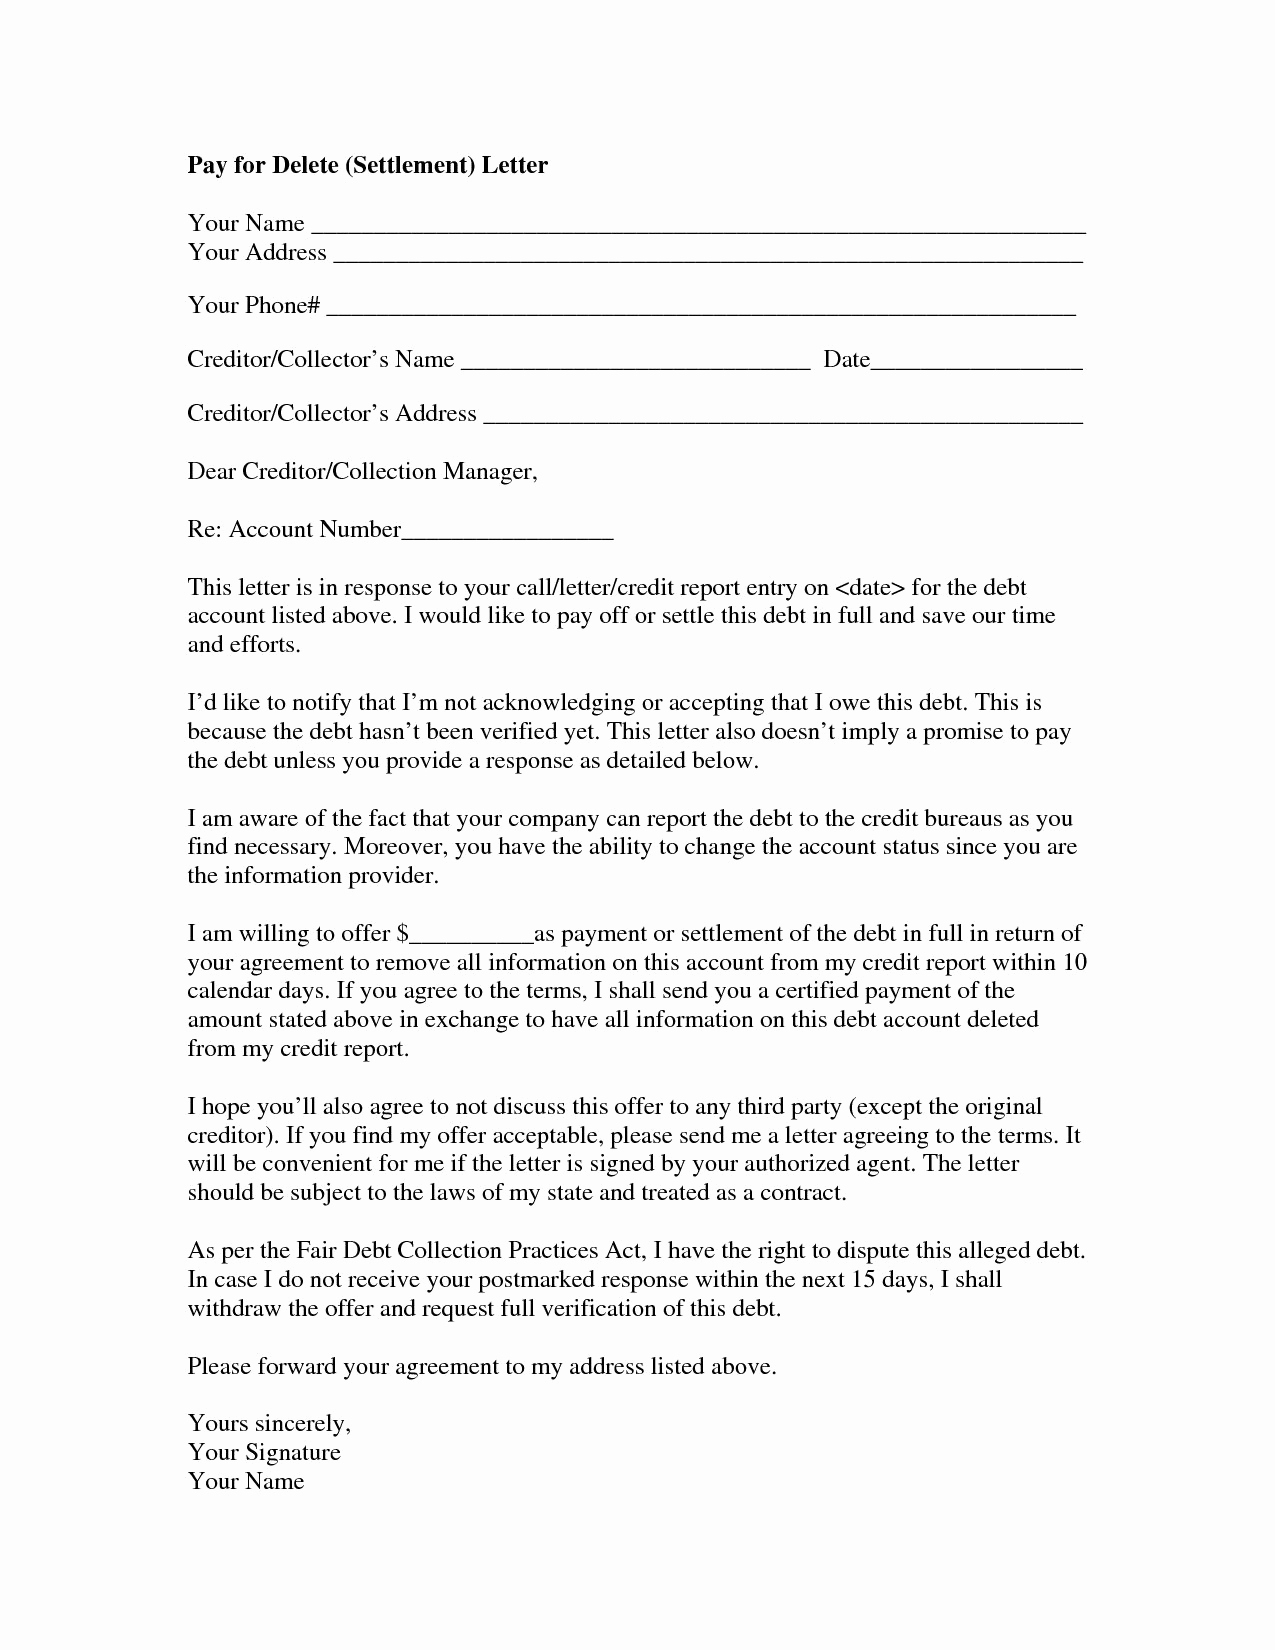 Legal Settlement Offer Letter Template - 20 Counter Fer Letter Samples